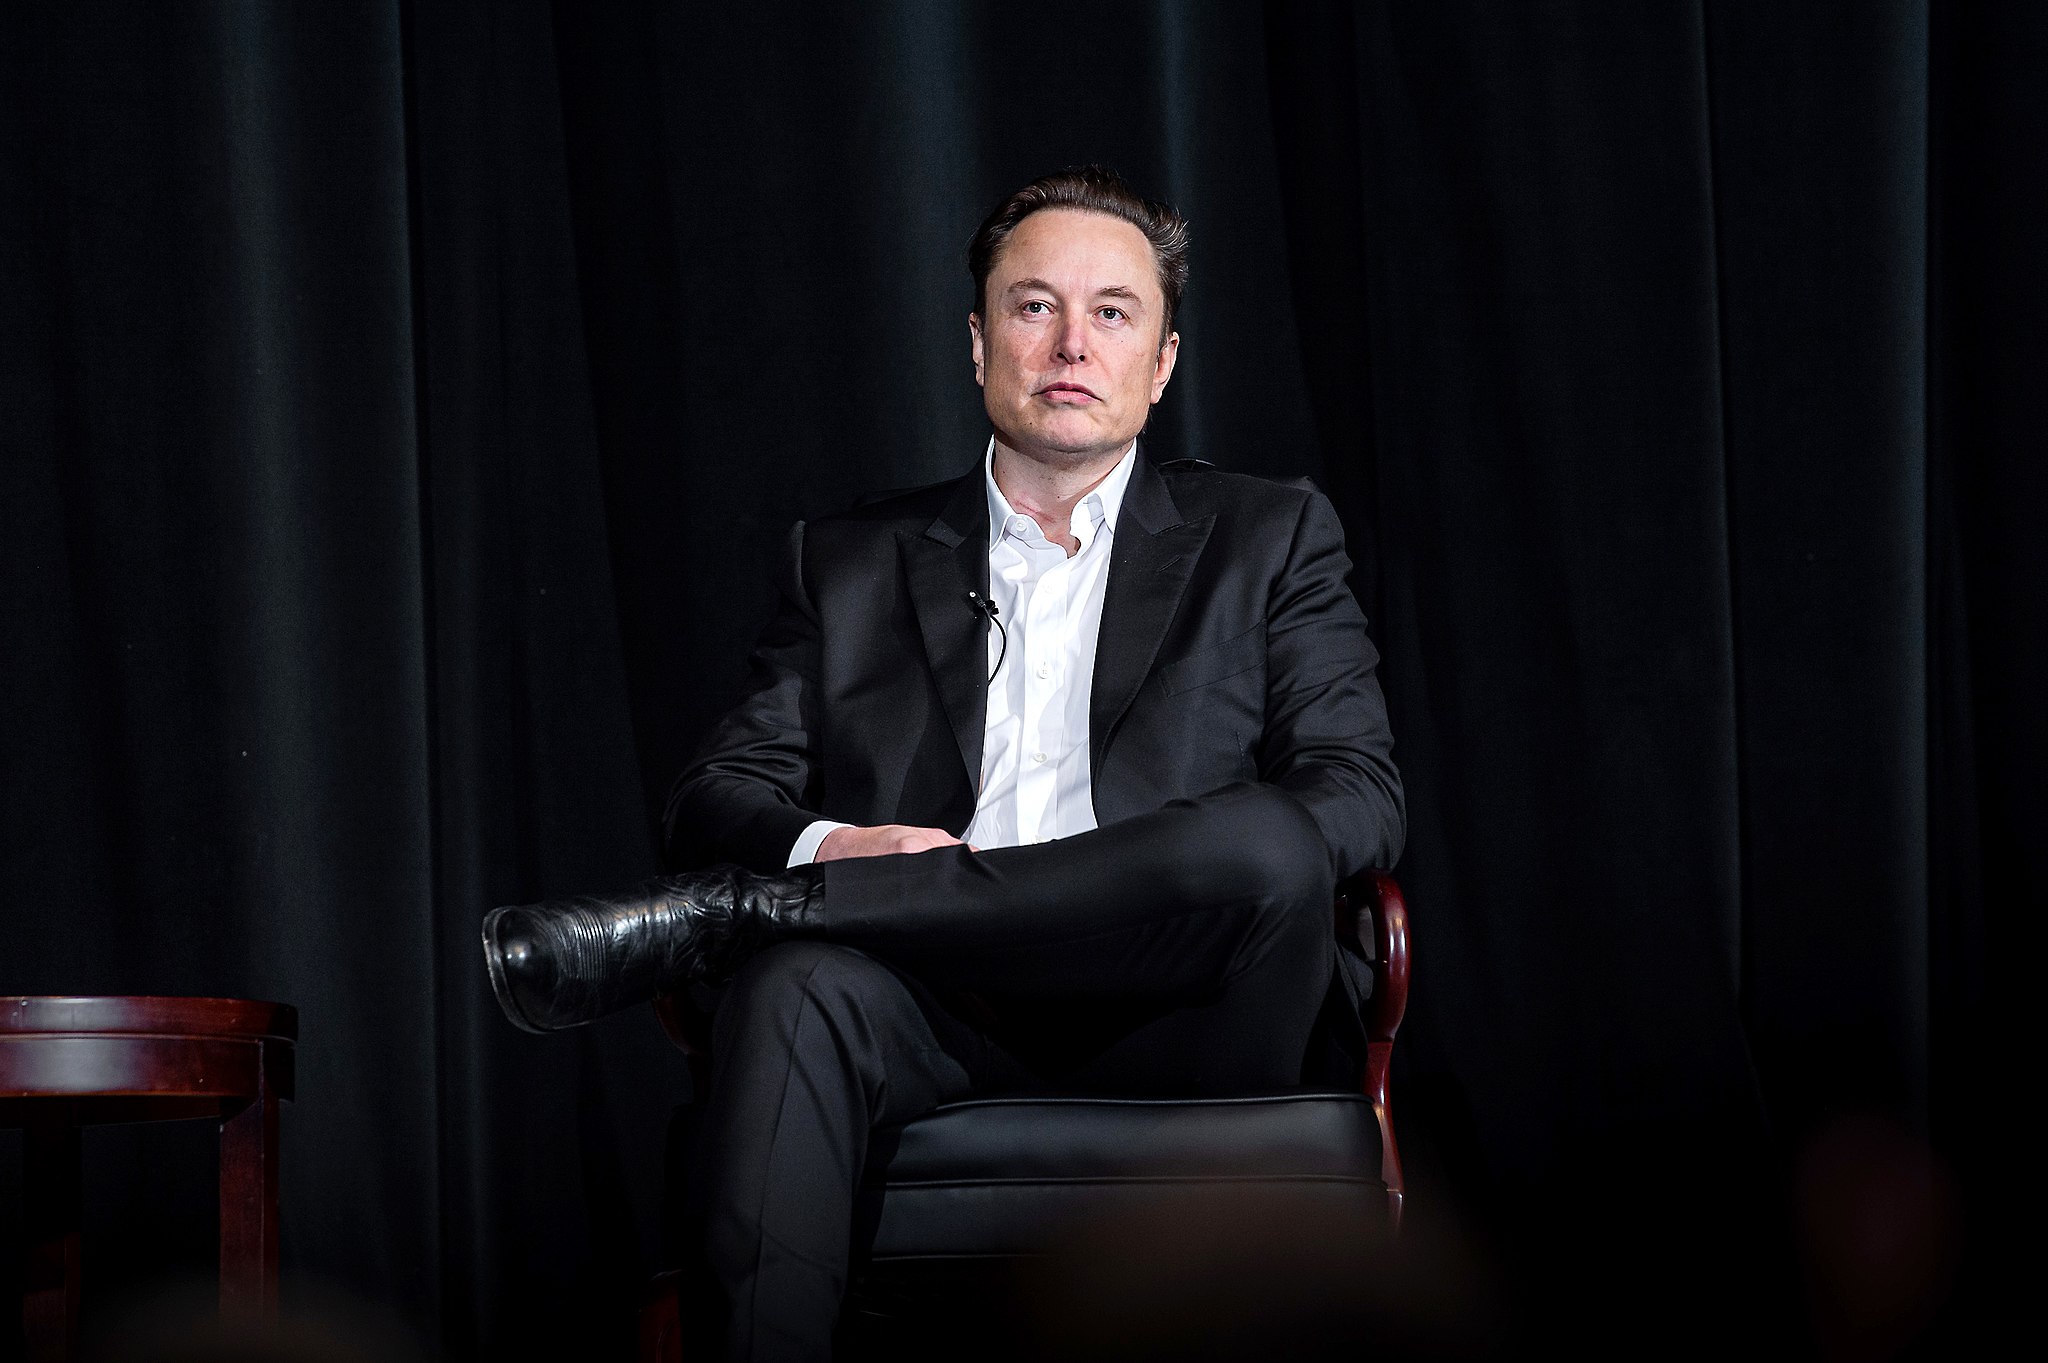 La startup d’IA d’Elon Musk vise à obtenir 1 milliard de dollars de financement en actions